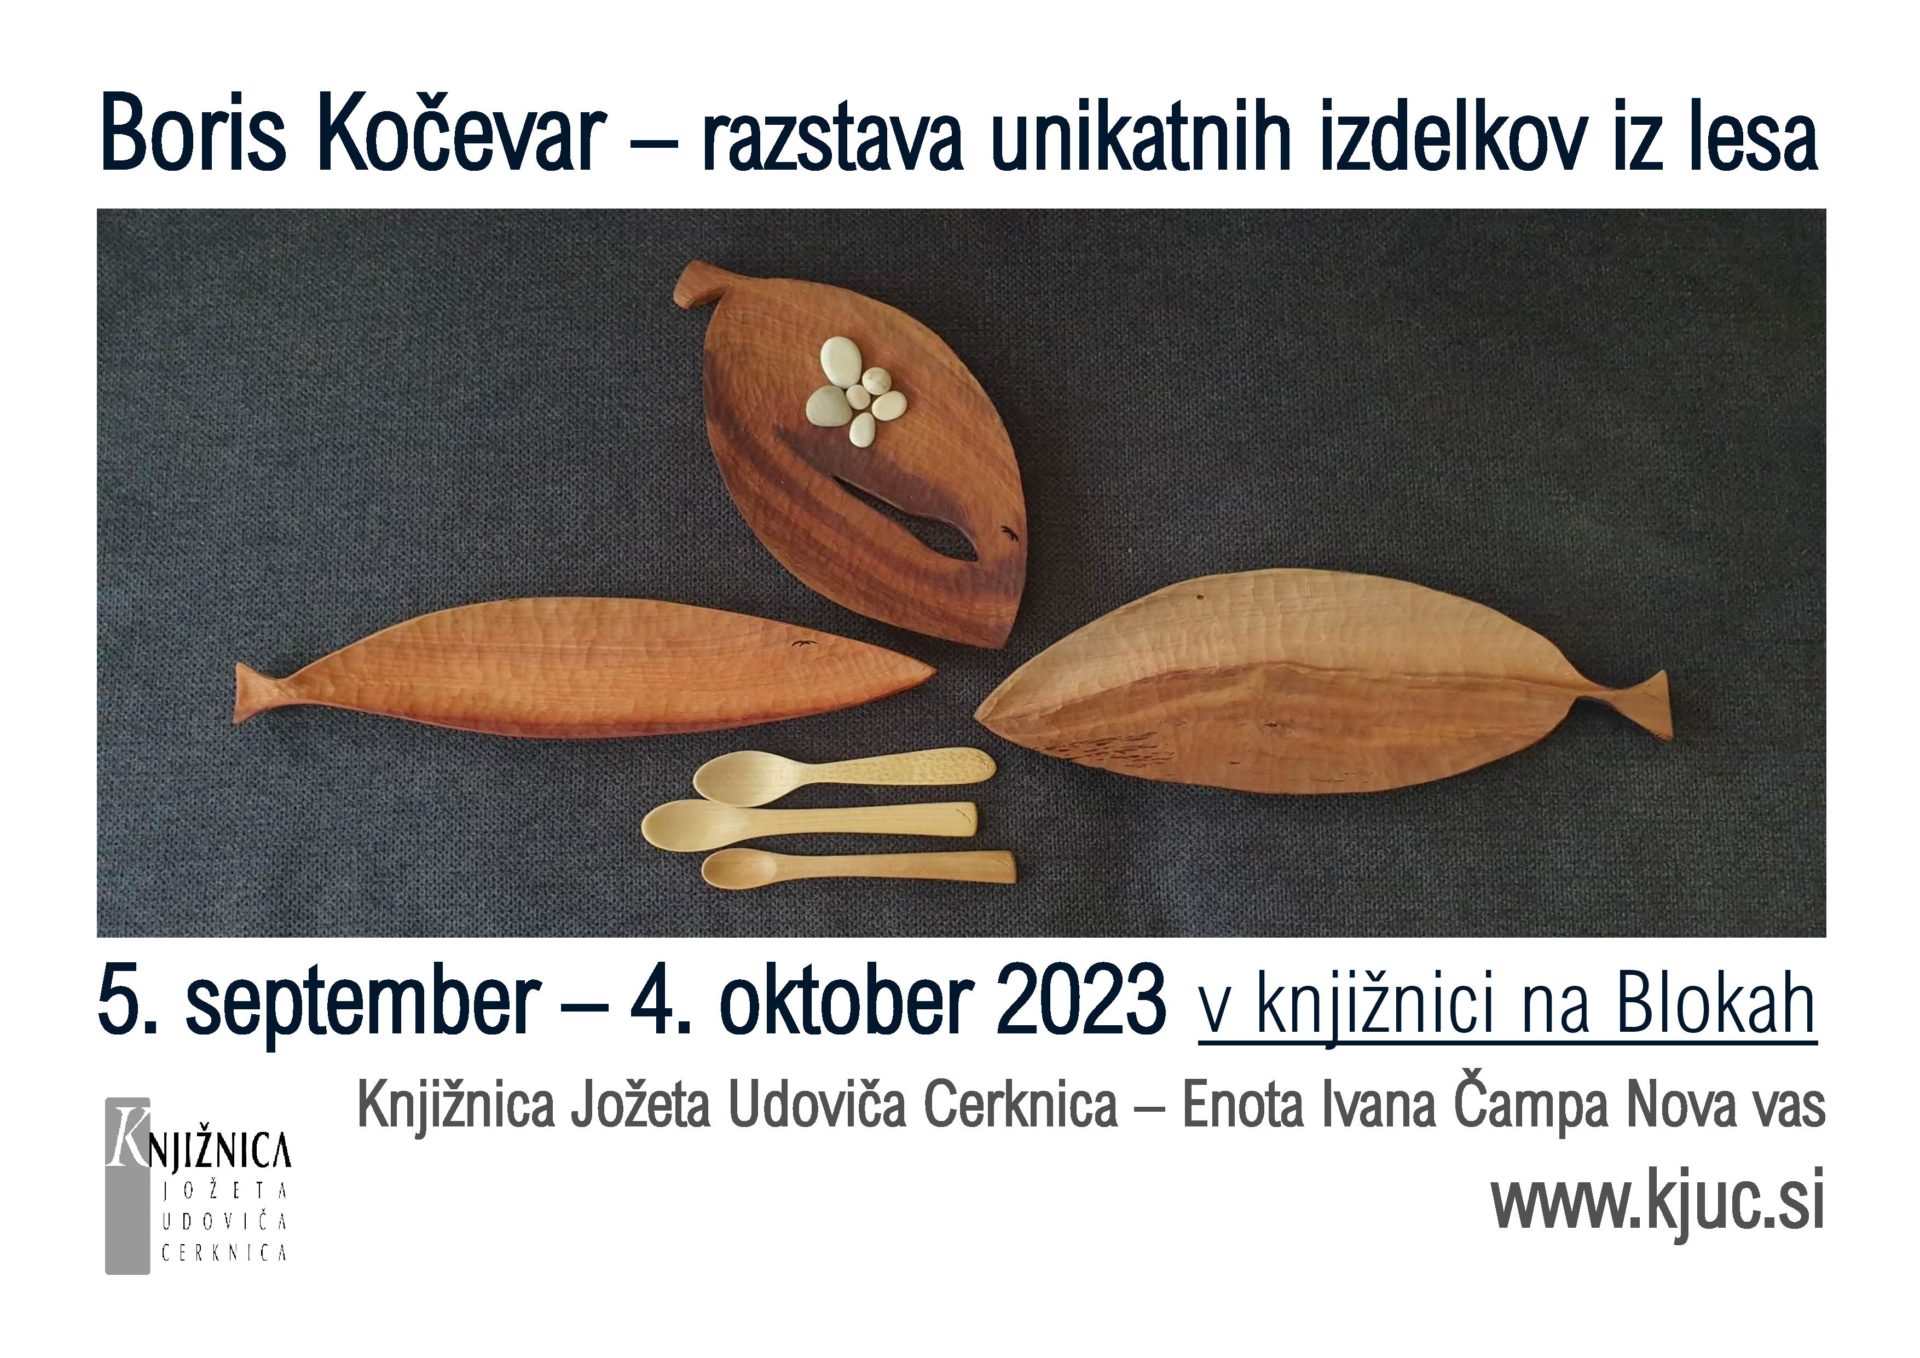 Boris Kocevar NV page 001 - Boris Kočevar – razstava unikatnih izdelkov iz lesa